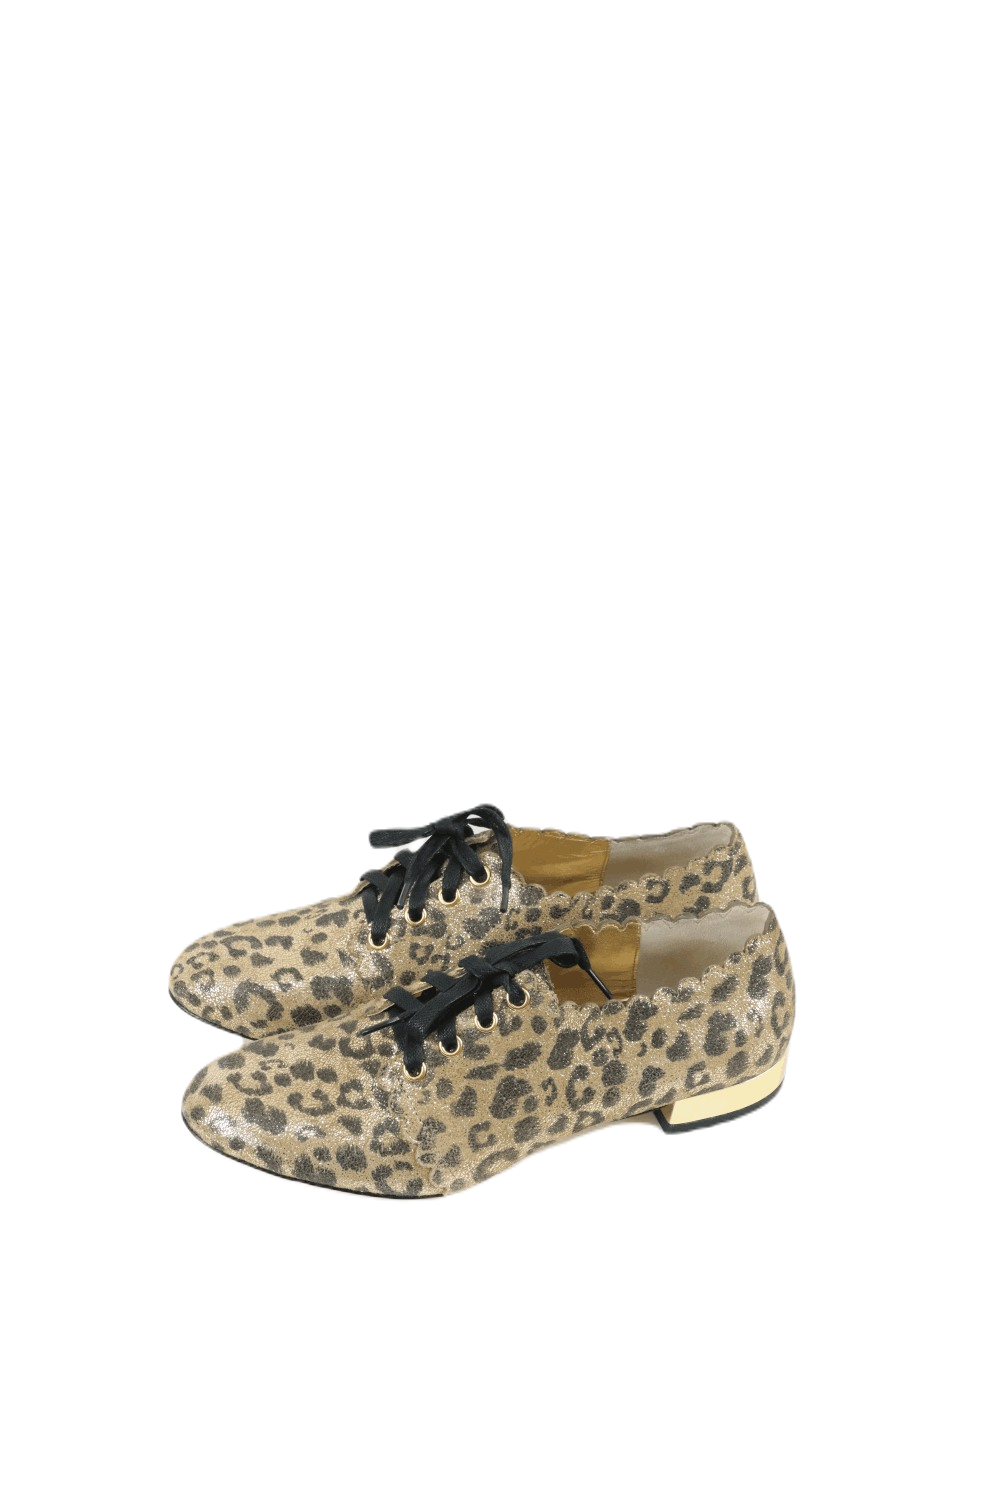 Mimco Leopard Print Shoes 37